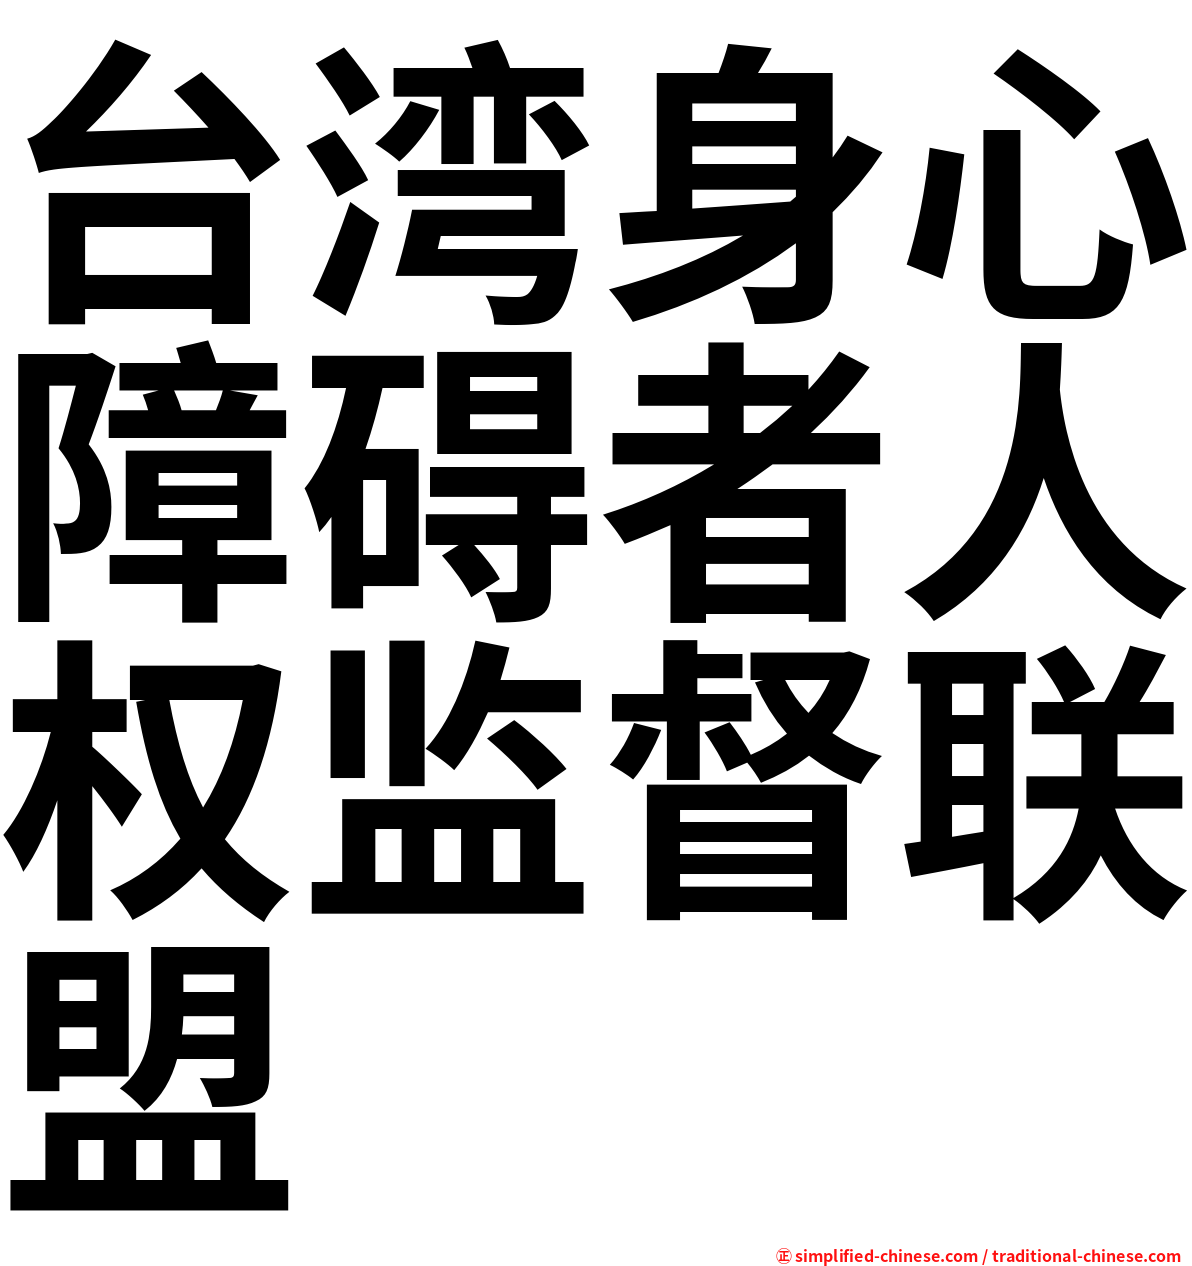 台湾身心障碍者人权监督联盟